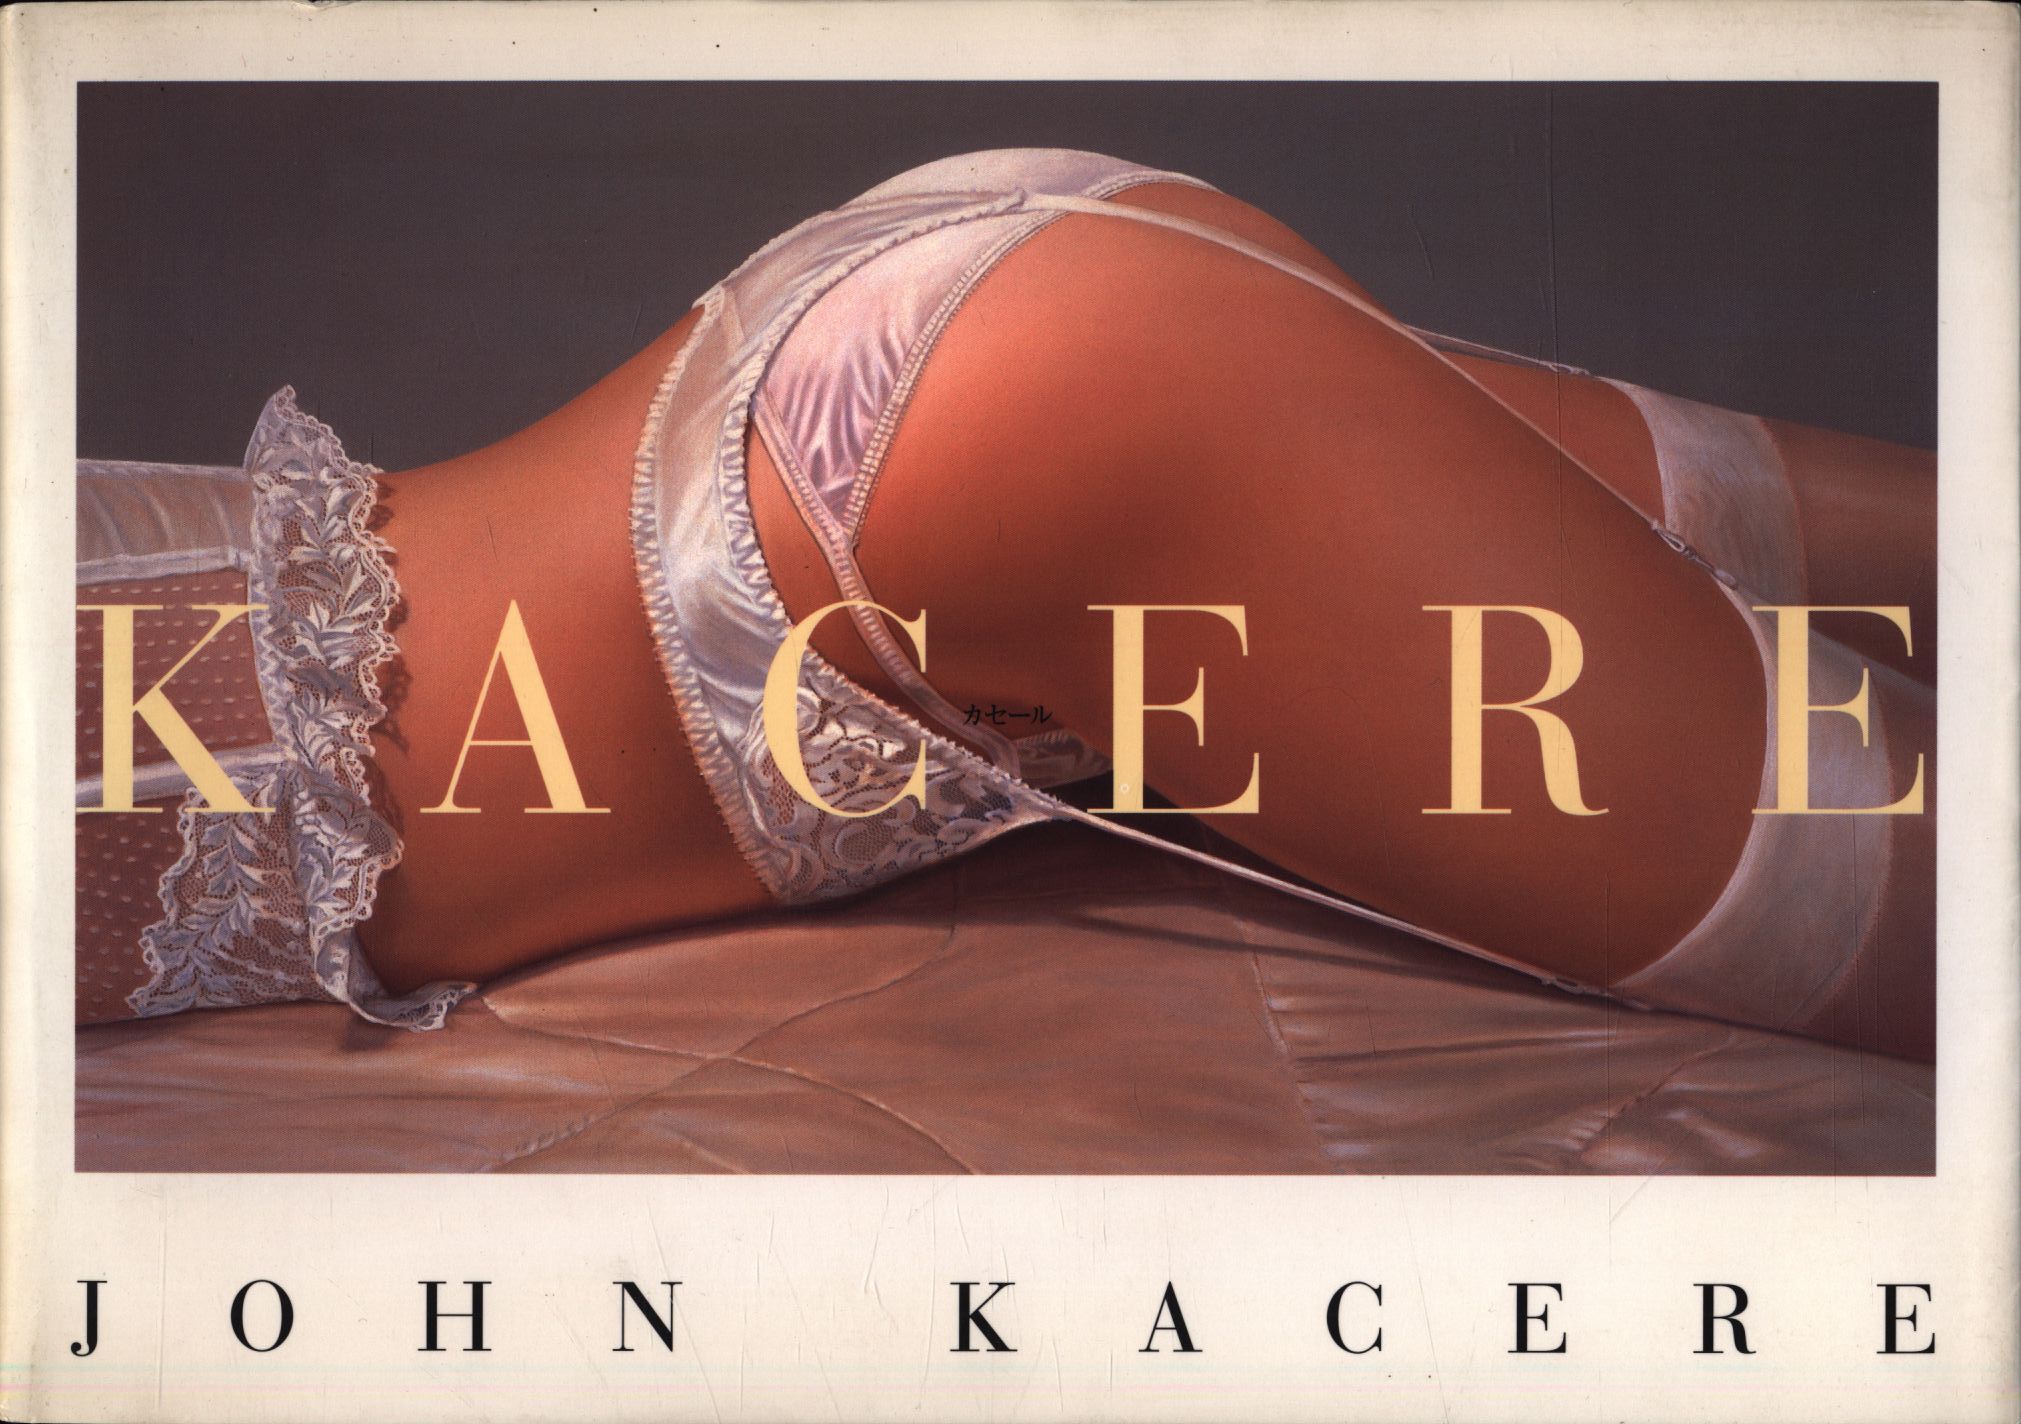 ジョン カセール KACERE images of erotic art 初版-